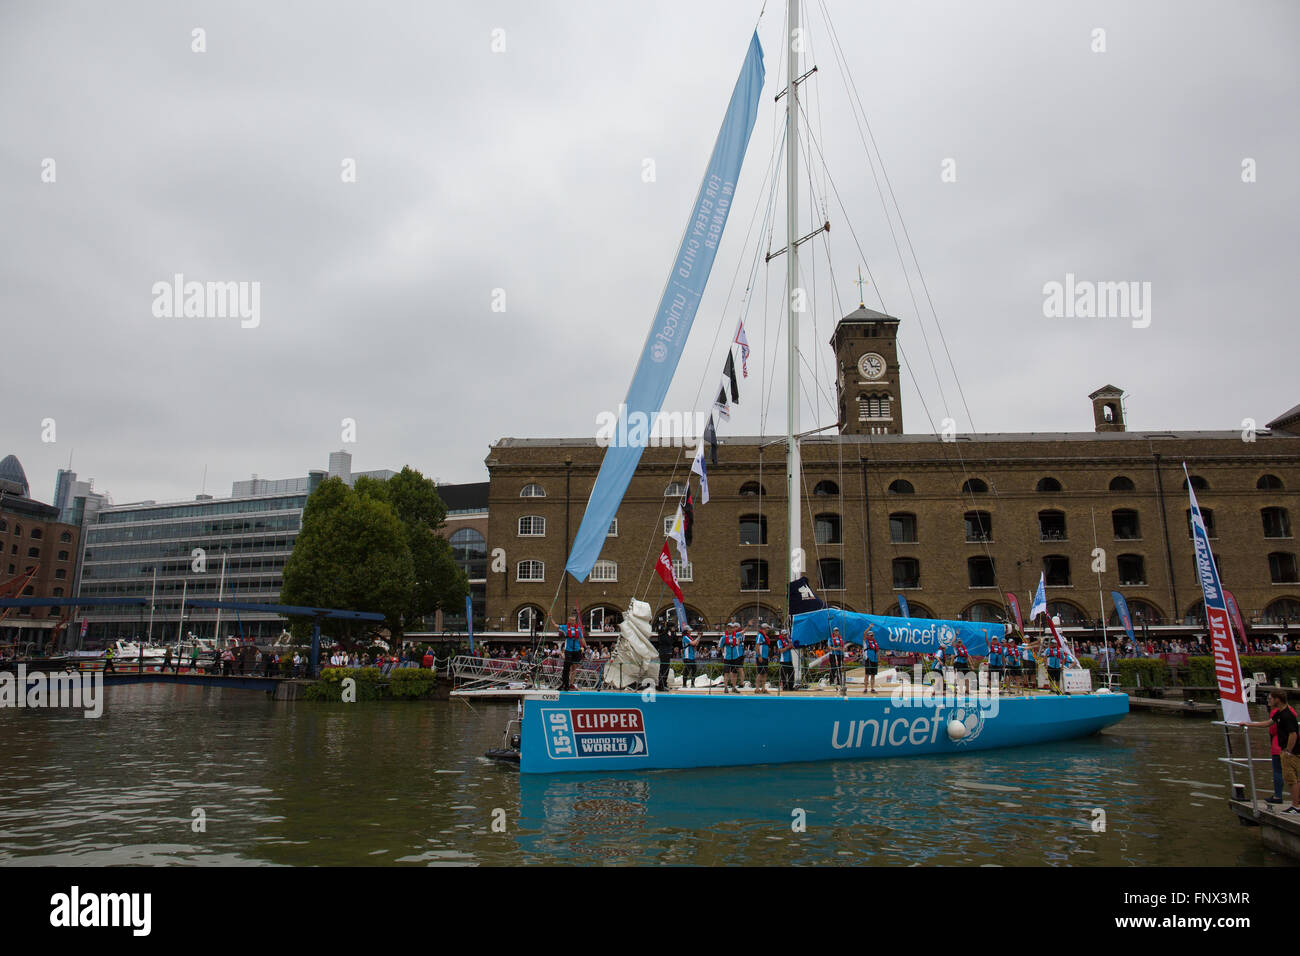 L'UNICEF a parrainé Clipper Round the World yacht race Banque D'Images